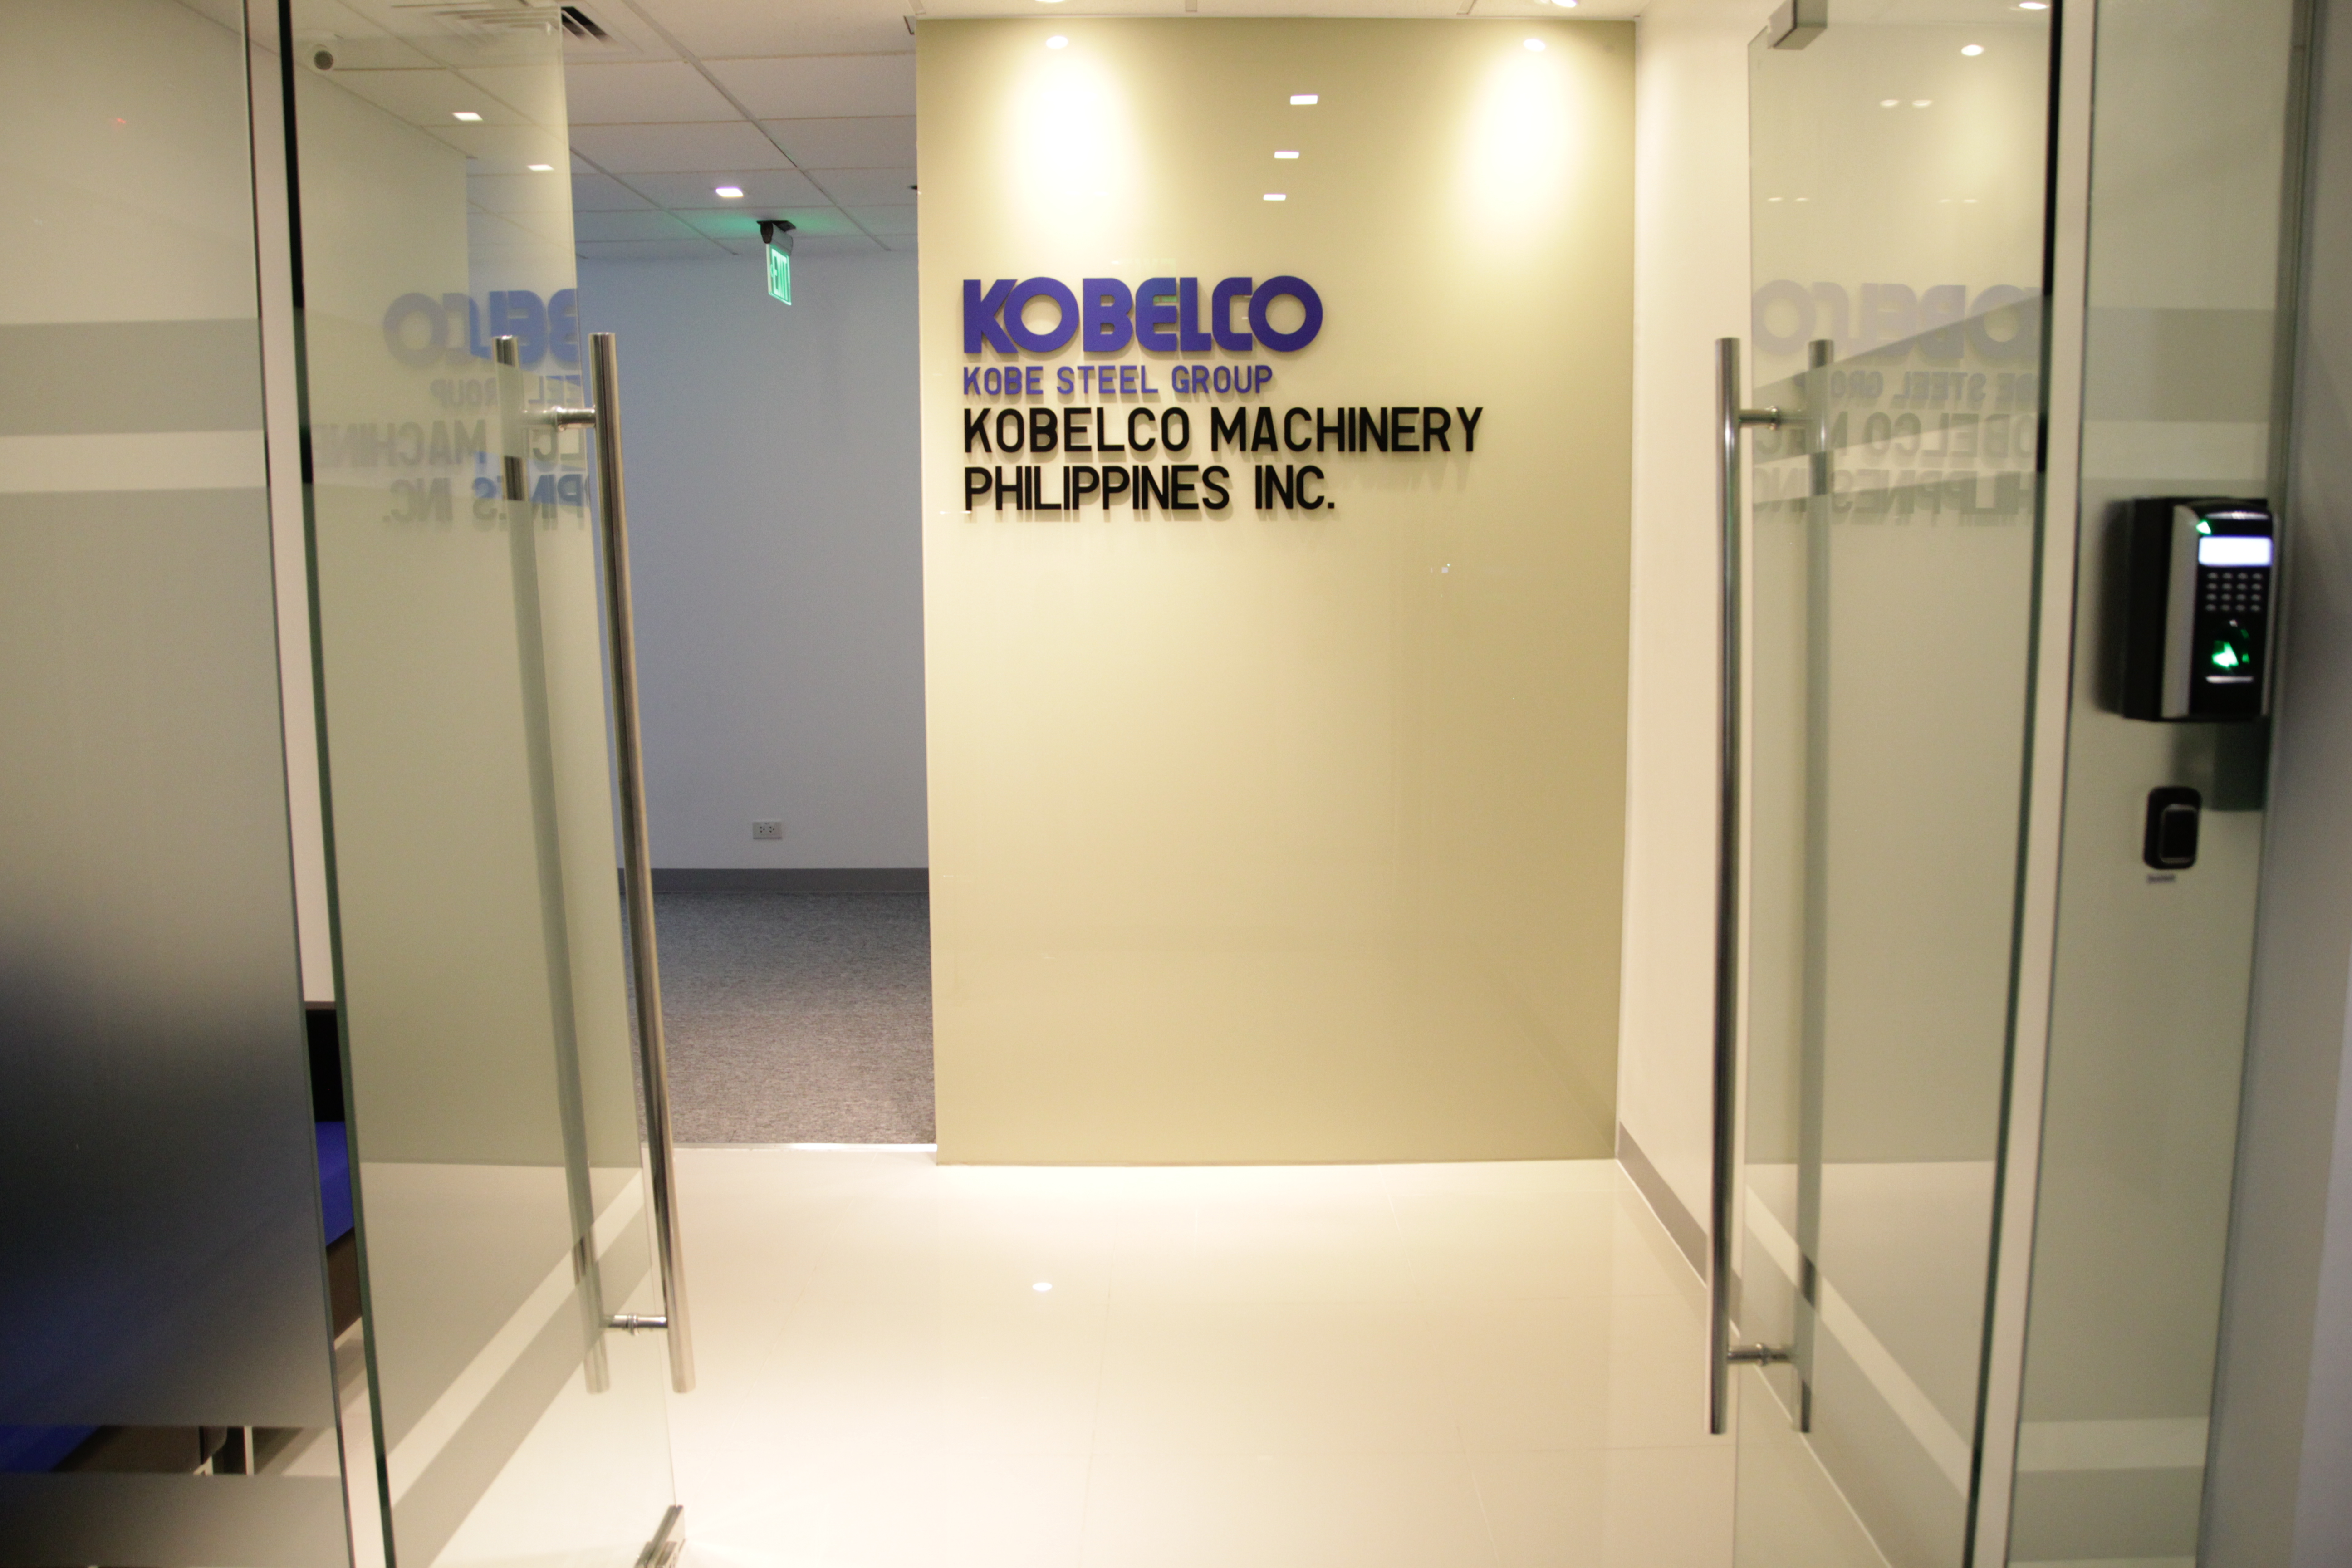 Kobelco Machinery Philippines Inc.